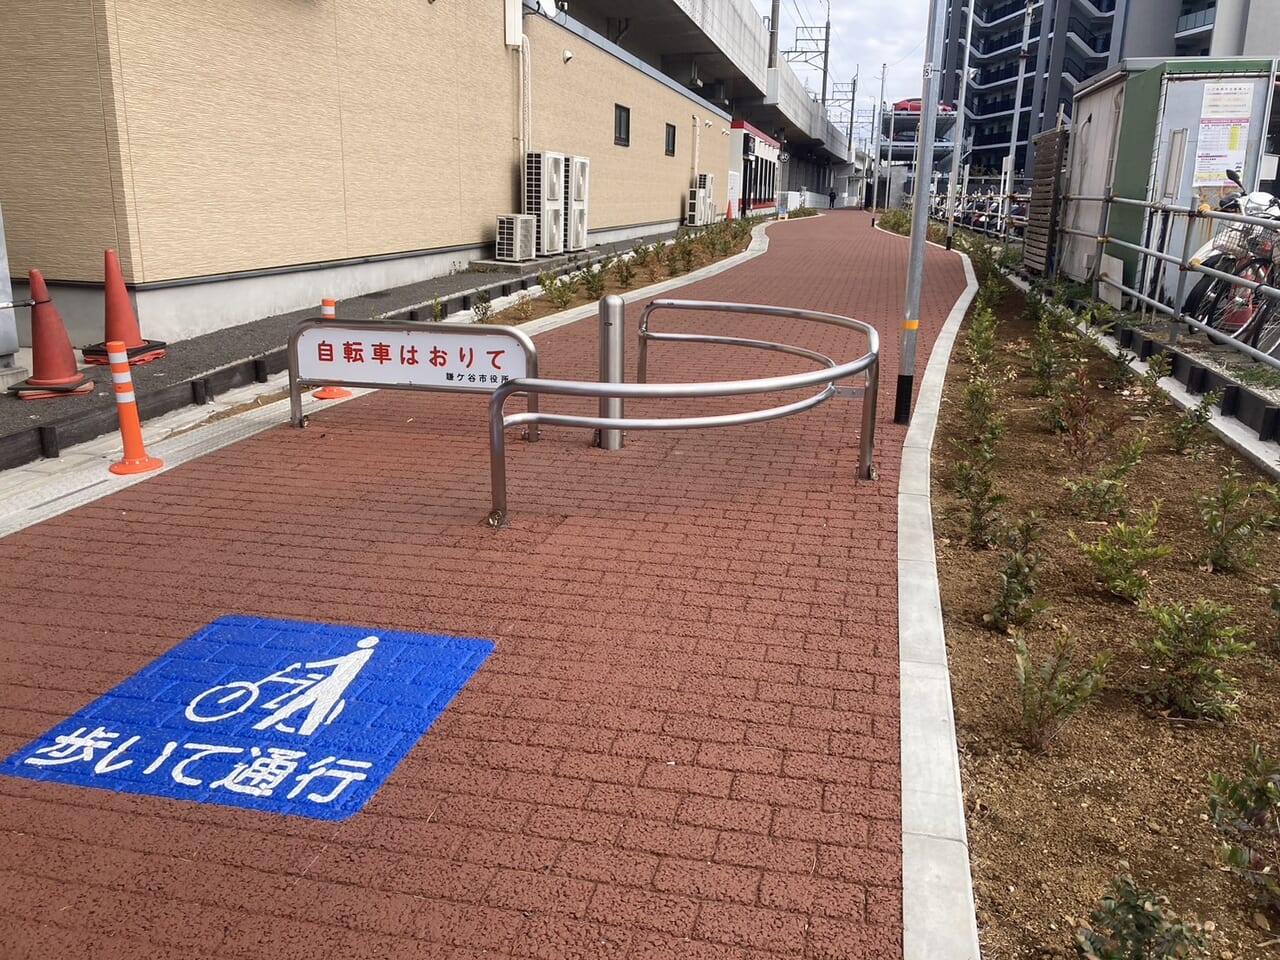 新鎌ケ谷駅周辺地区歩行者専用道路